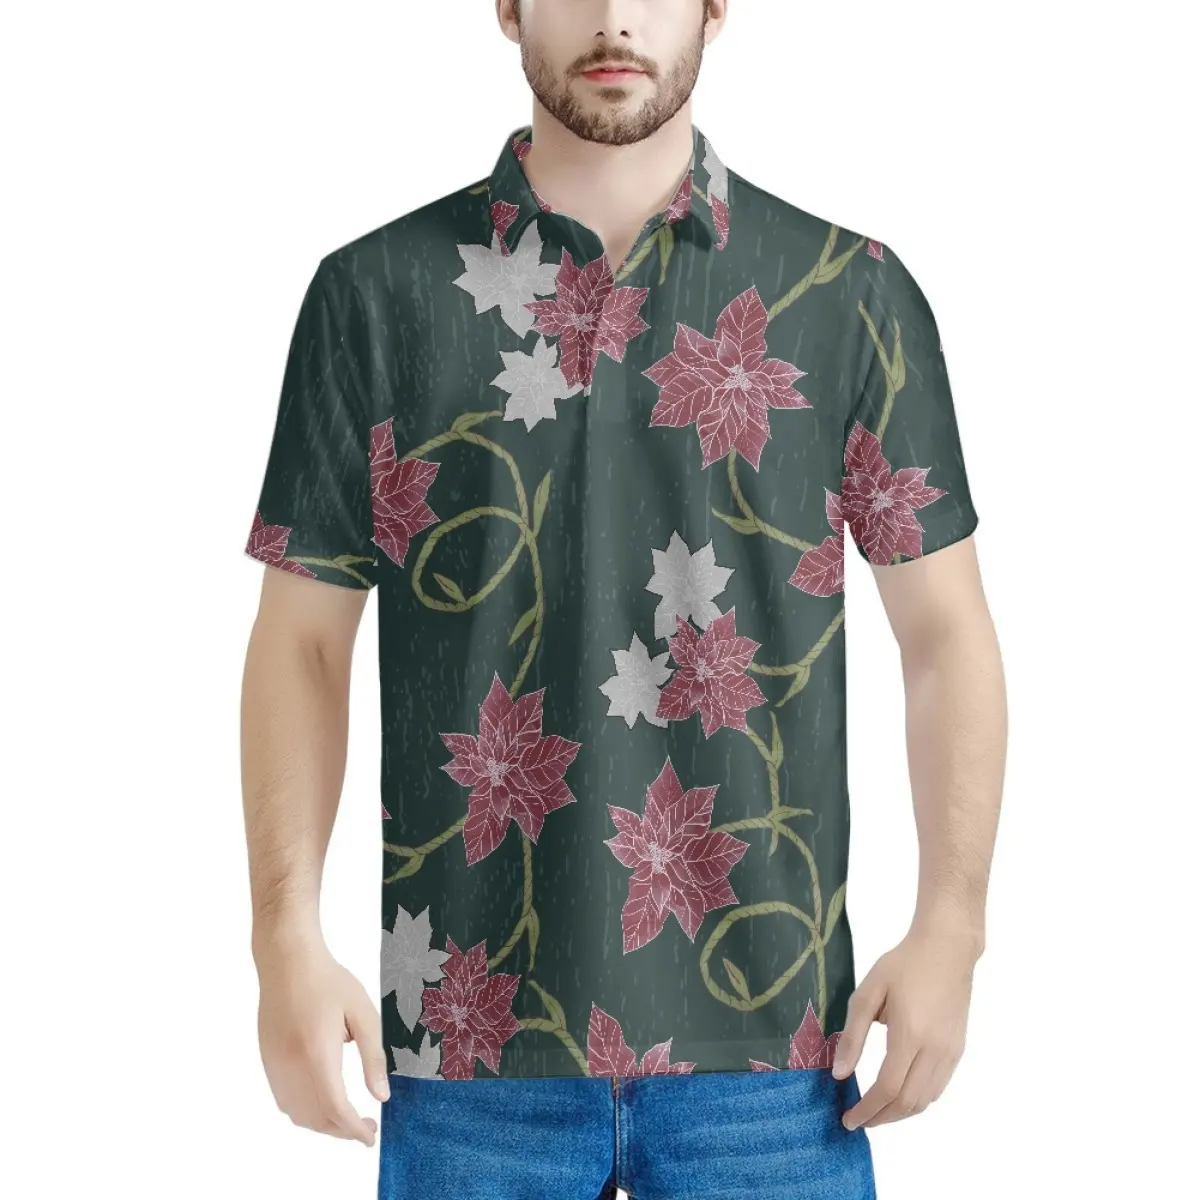 ड्रॉपशीपिंग कपड़े स्टाइलिश और चमकदार हवाई पुआ कालिकमाका प्रिंट कस्टम पुरुषों के लिए सांस लेने योग्य शॉर्ट्स आस्तीन त्वरित सूखी टी शर्ट